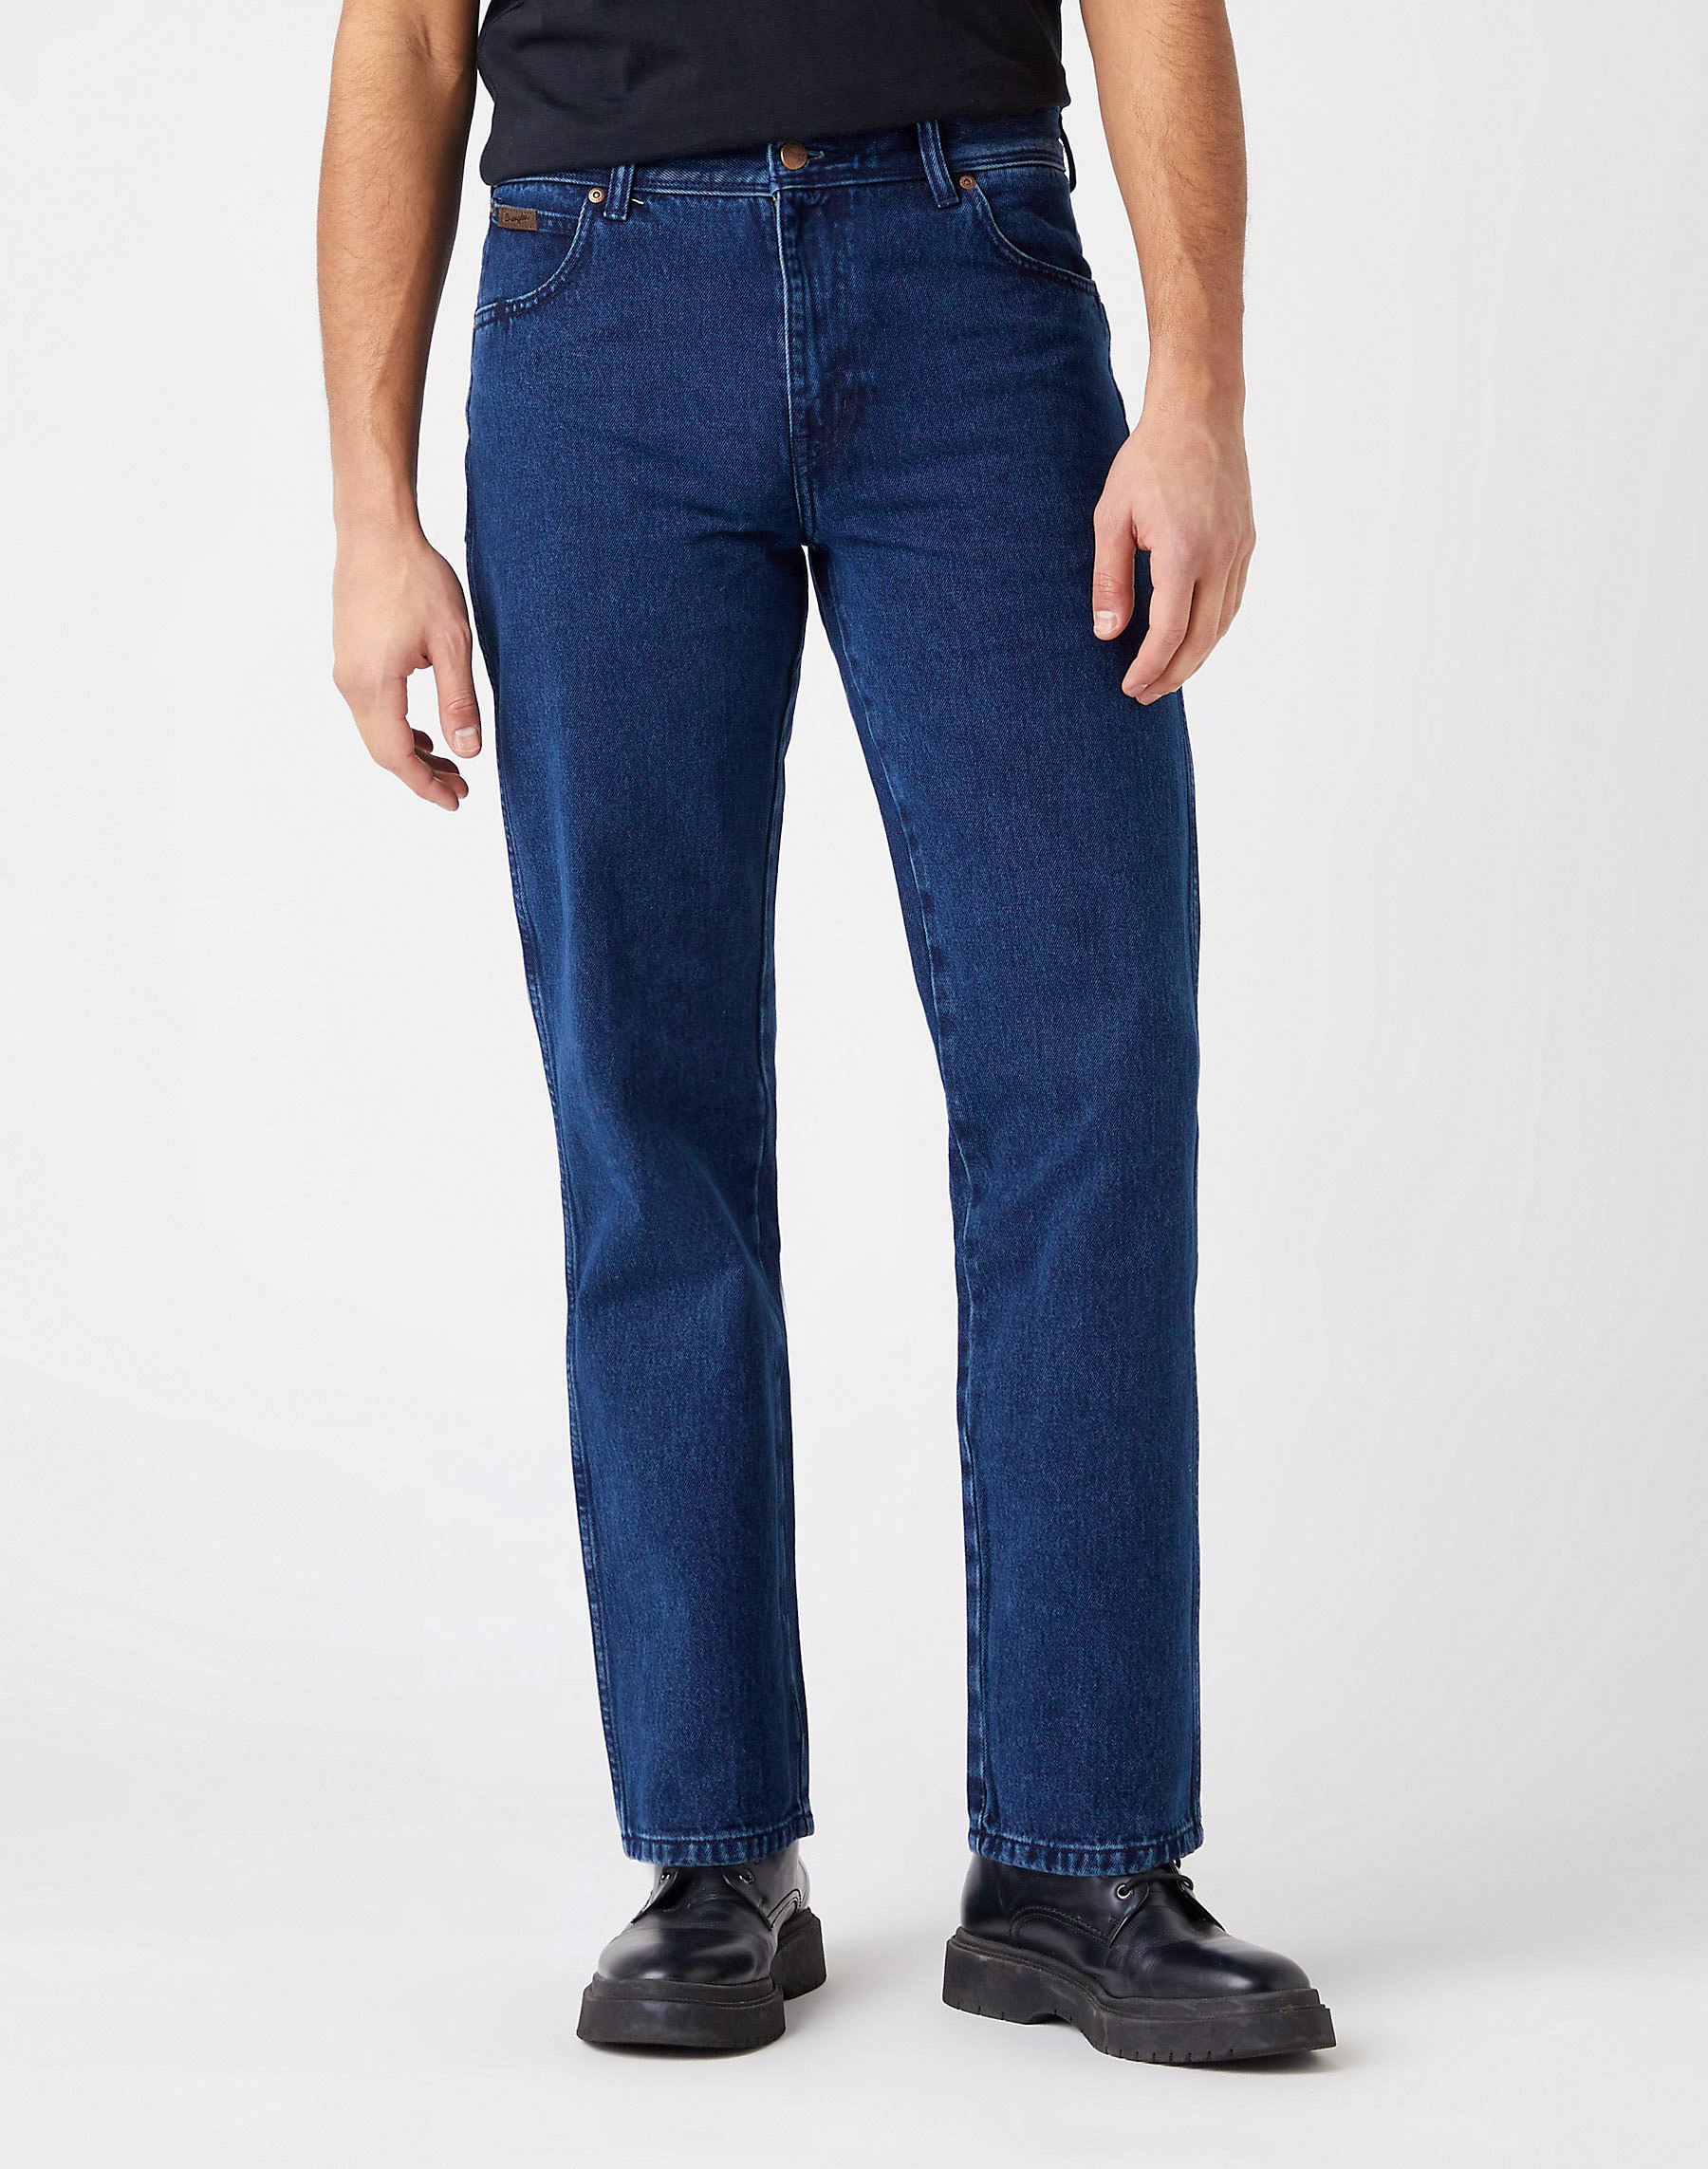 Wrangler Jeans für Herren | Online Shop | günstig kaufen